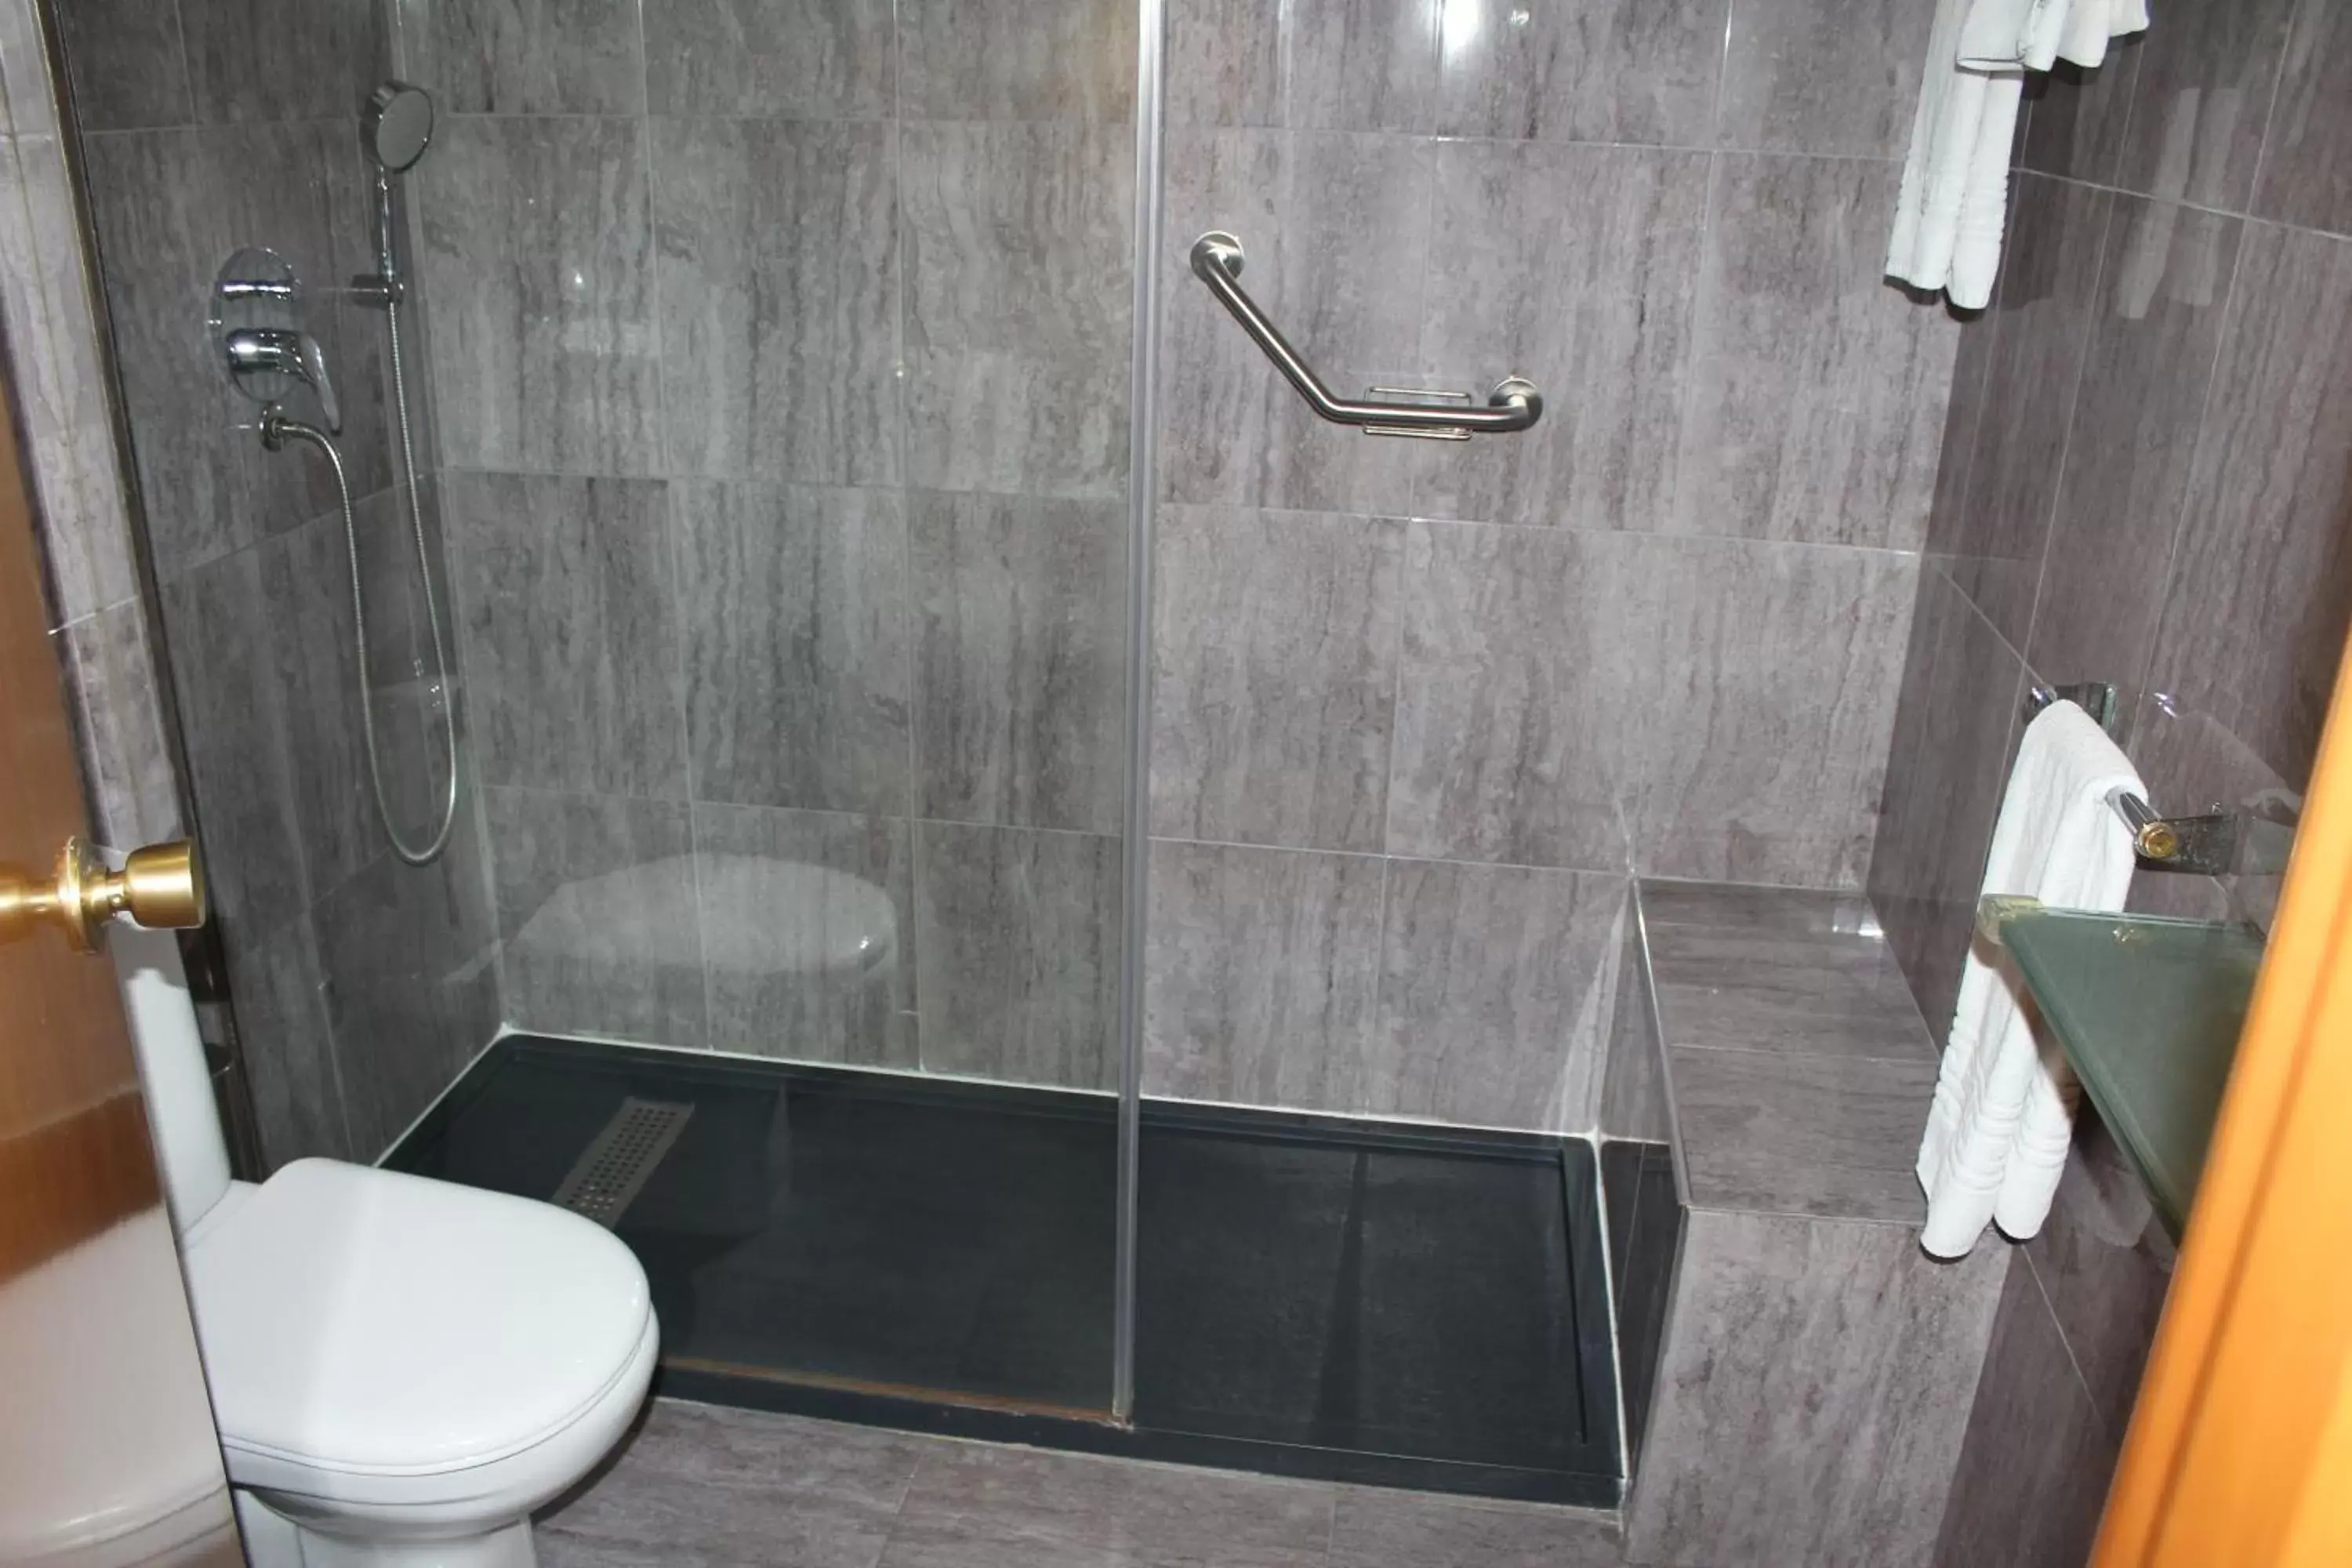 Shower, Bathroom in Mendez Nuñez Alicante